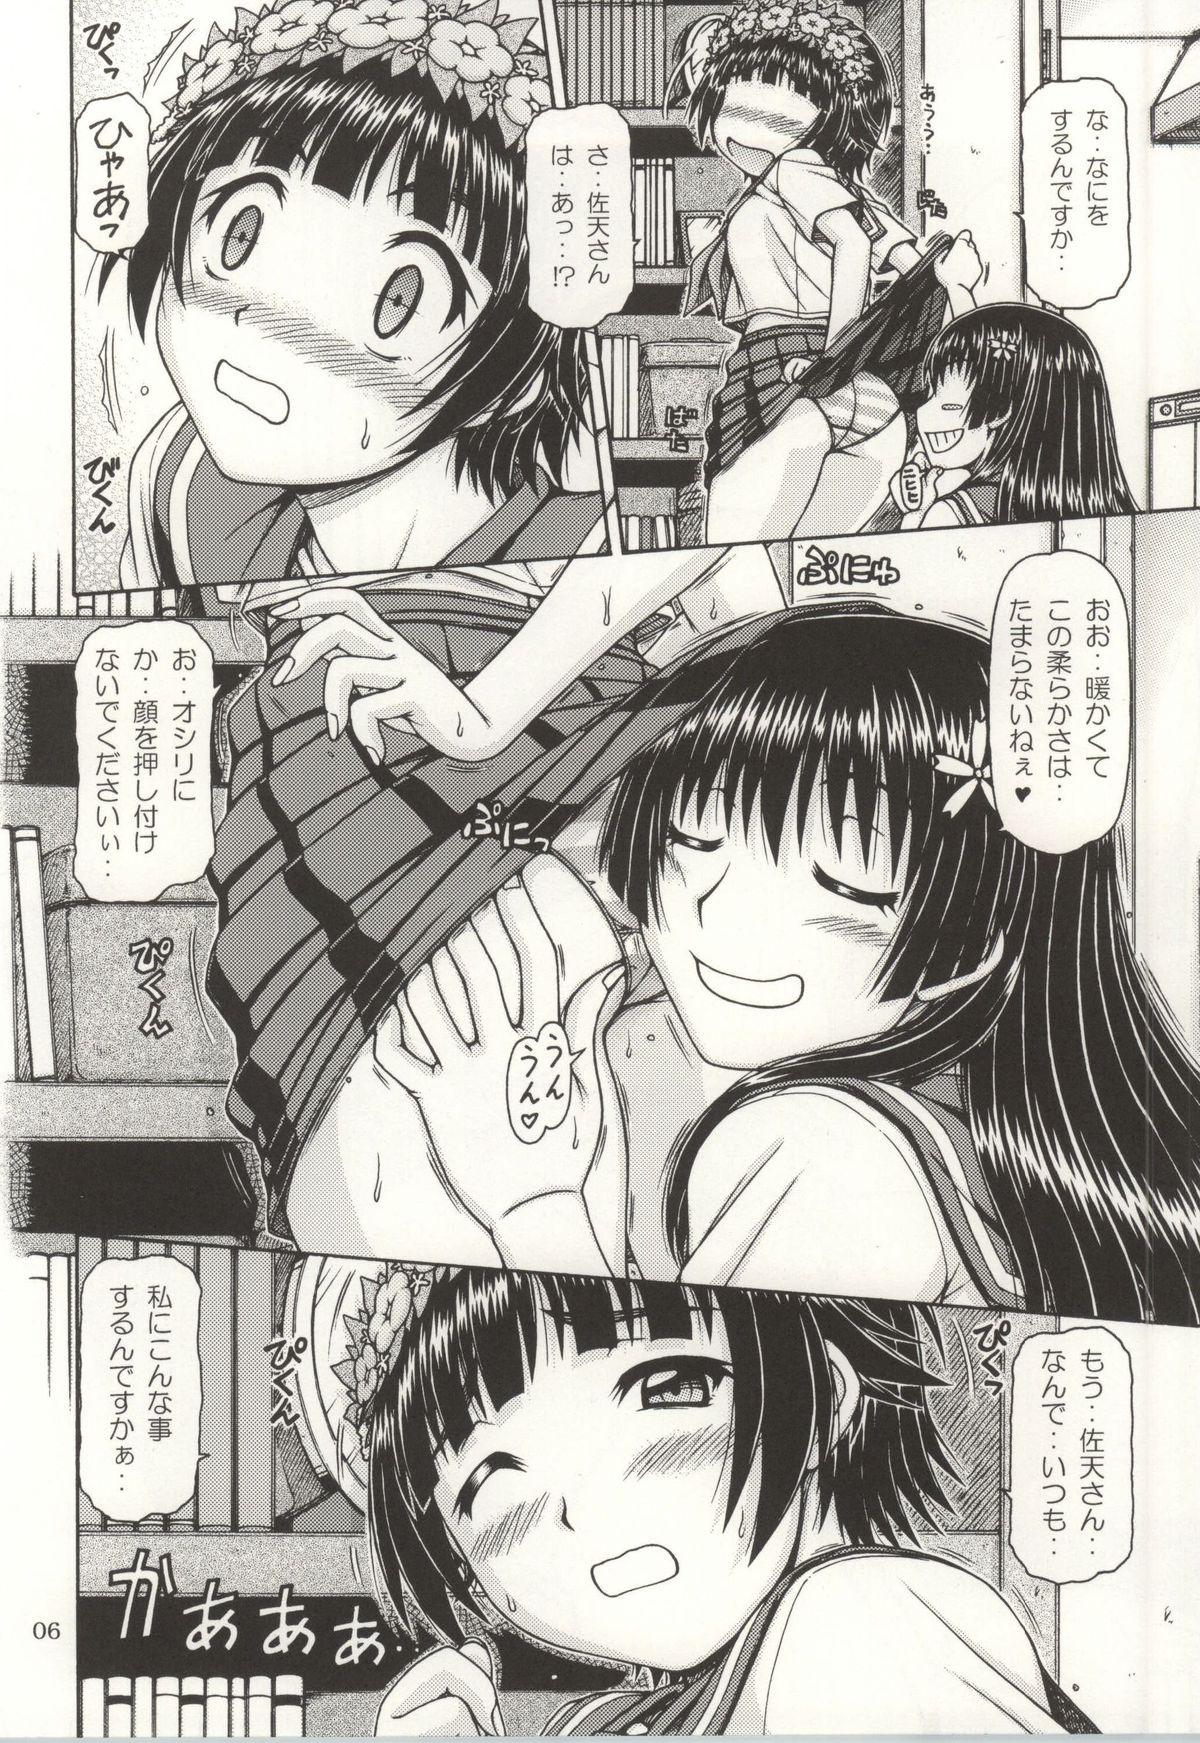 Anal ONE-SEVEN+ Vol.01 - Toaru kagaku no railgun Toaru majutsu no index Hiddencam - Page 4